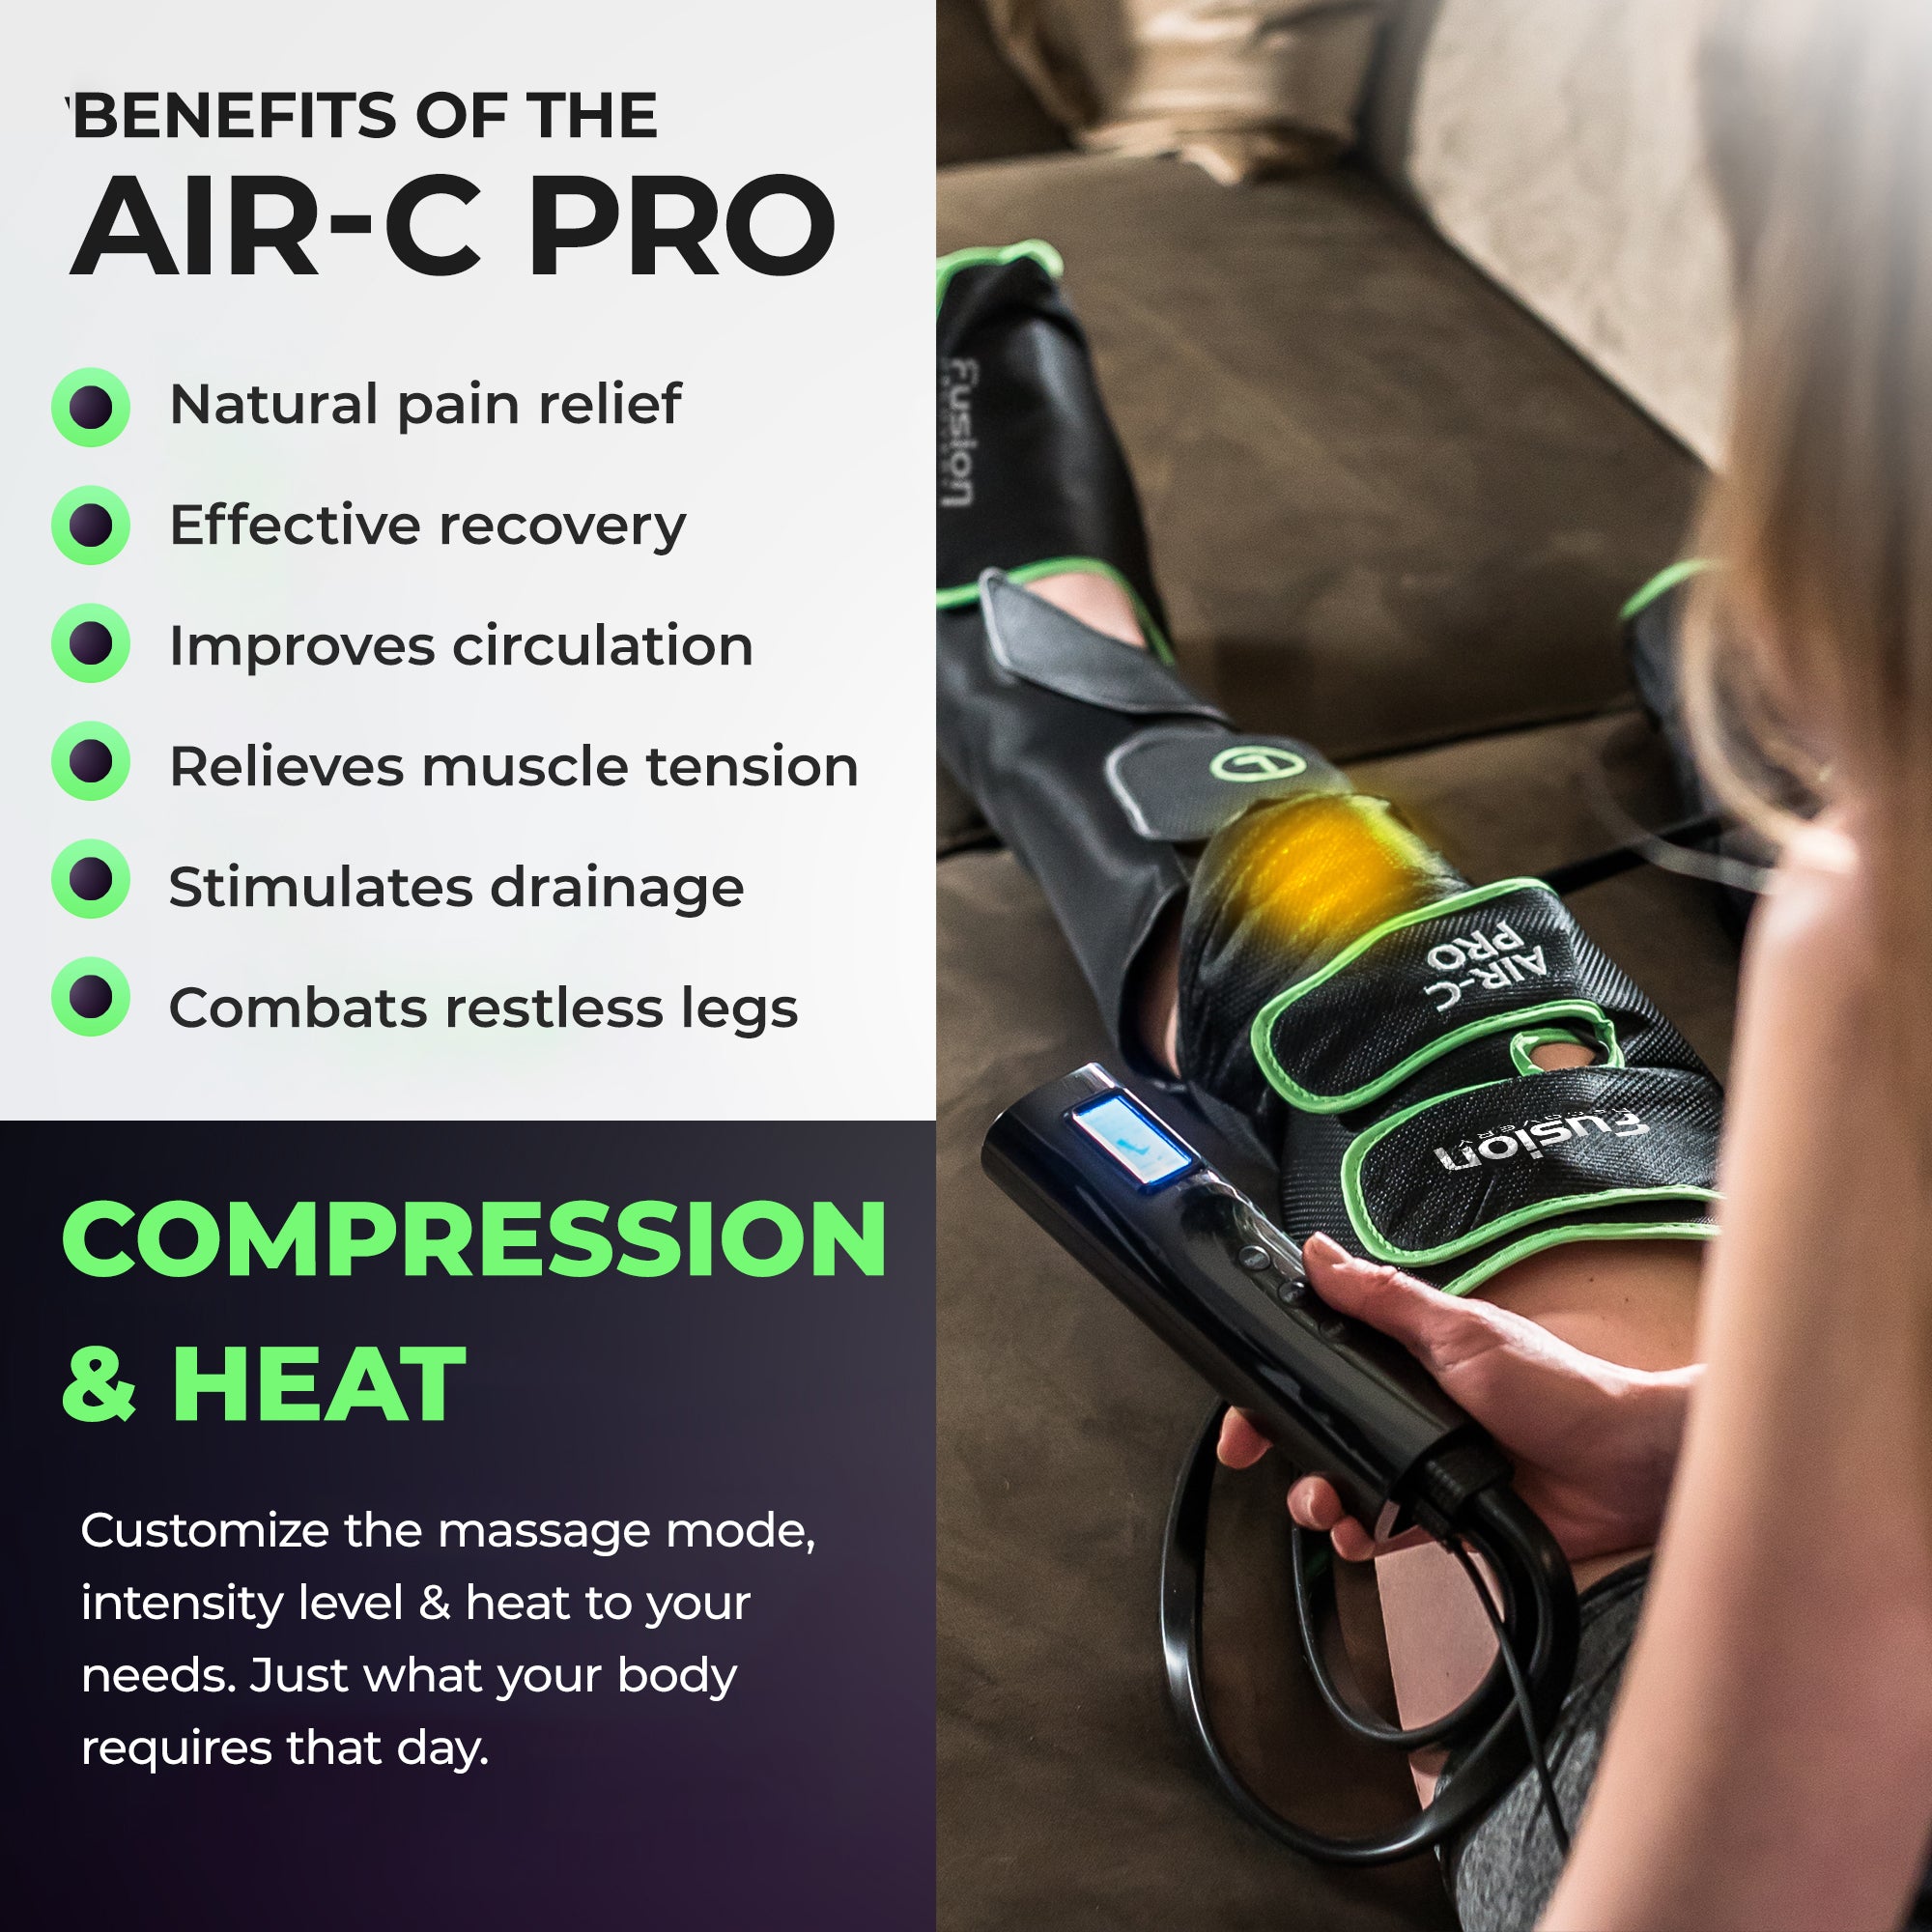 Air-C Pro leg massager